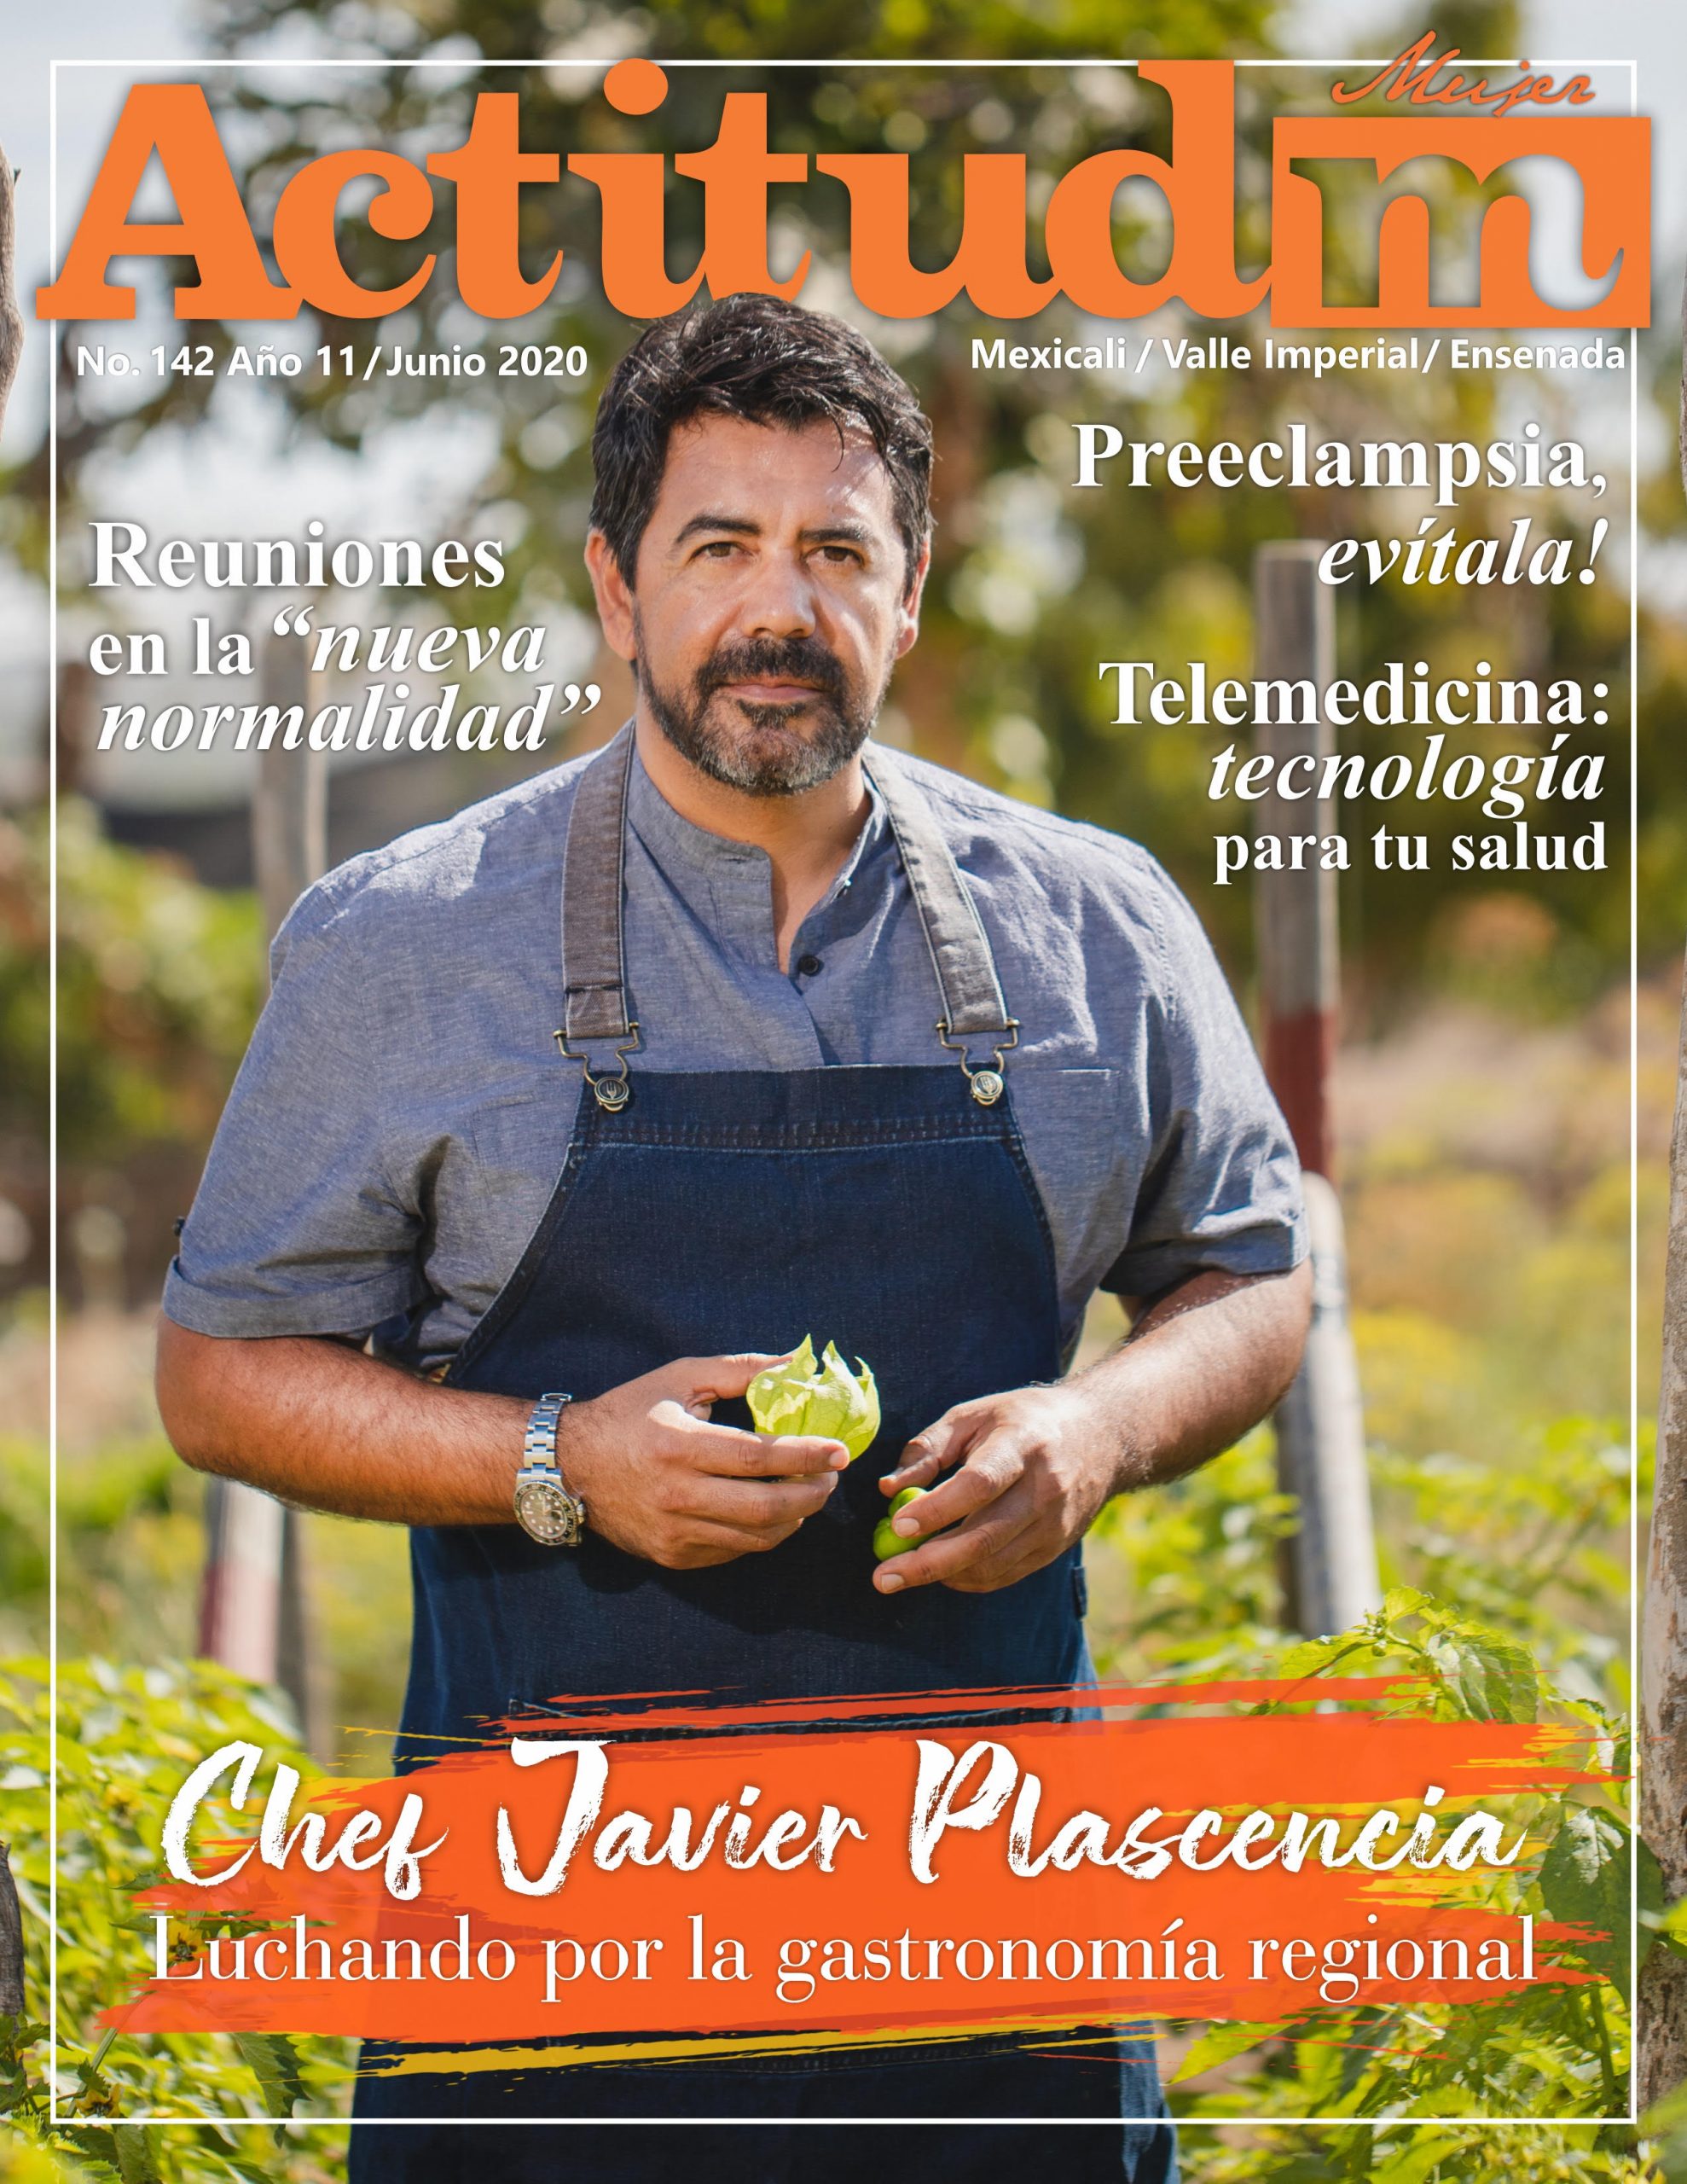 Chef Javier Plascencia